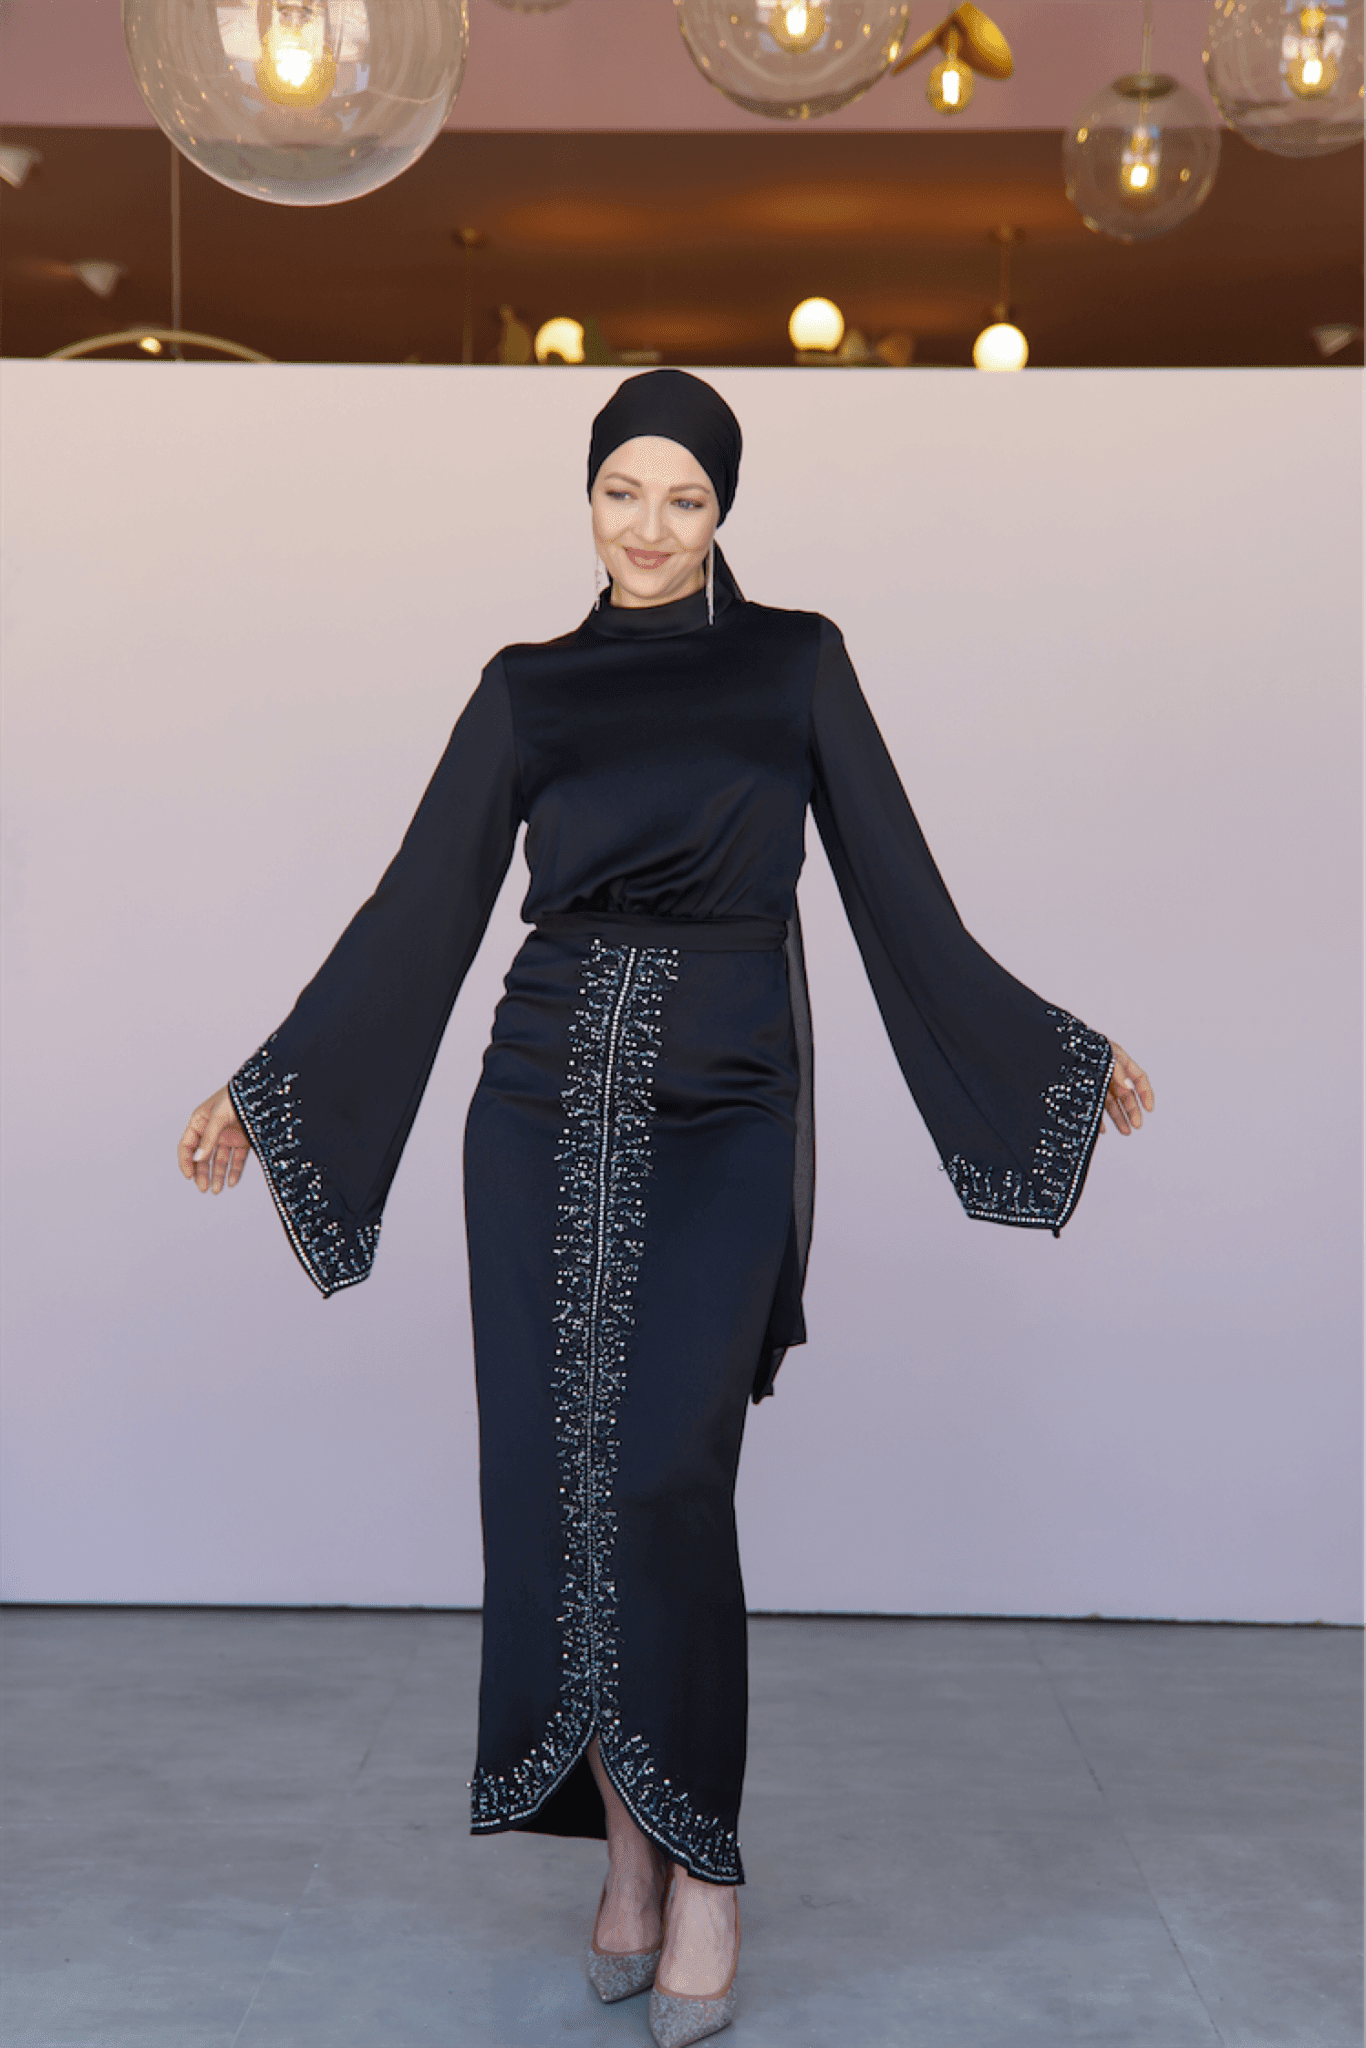 Thai Hijab Evening Dress - Black